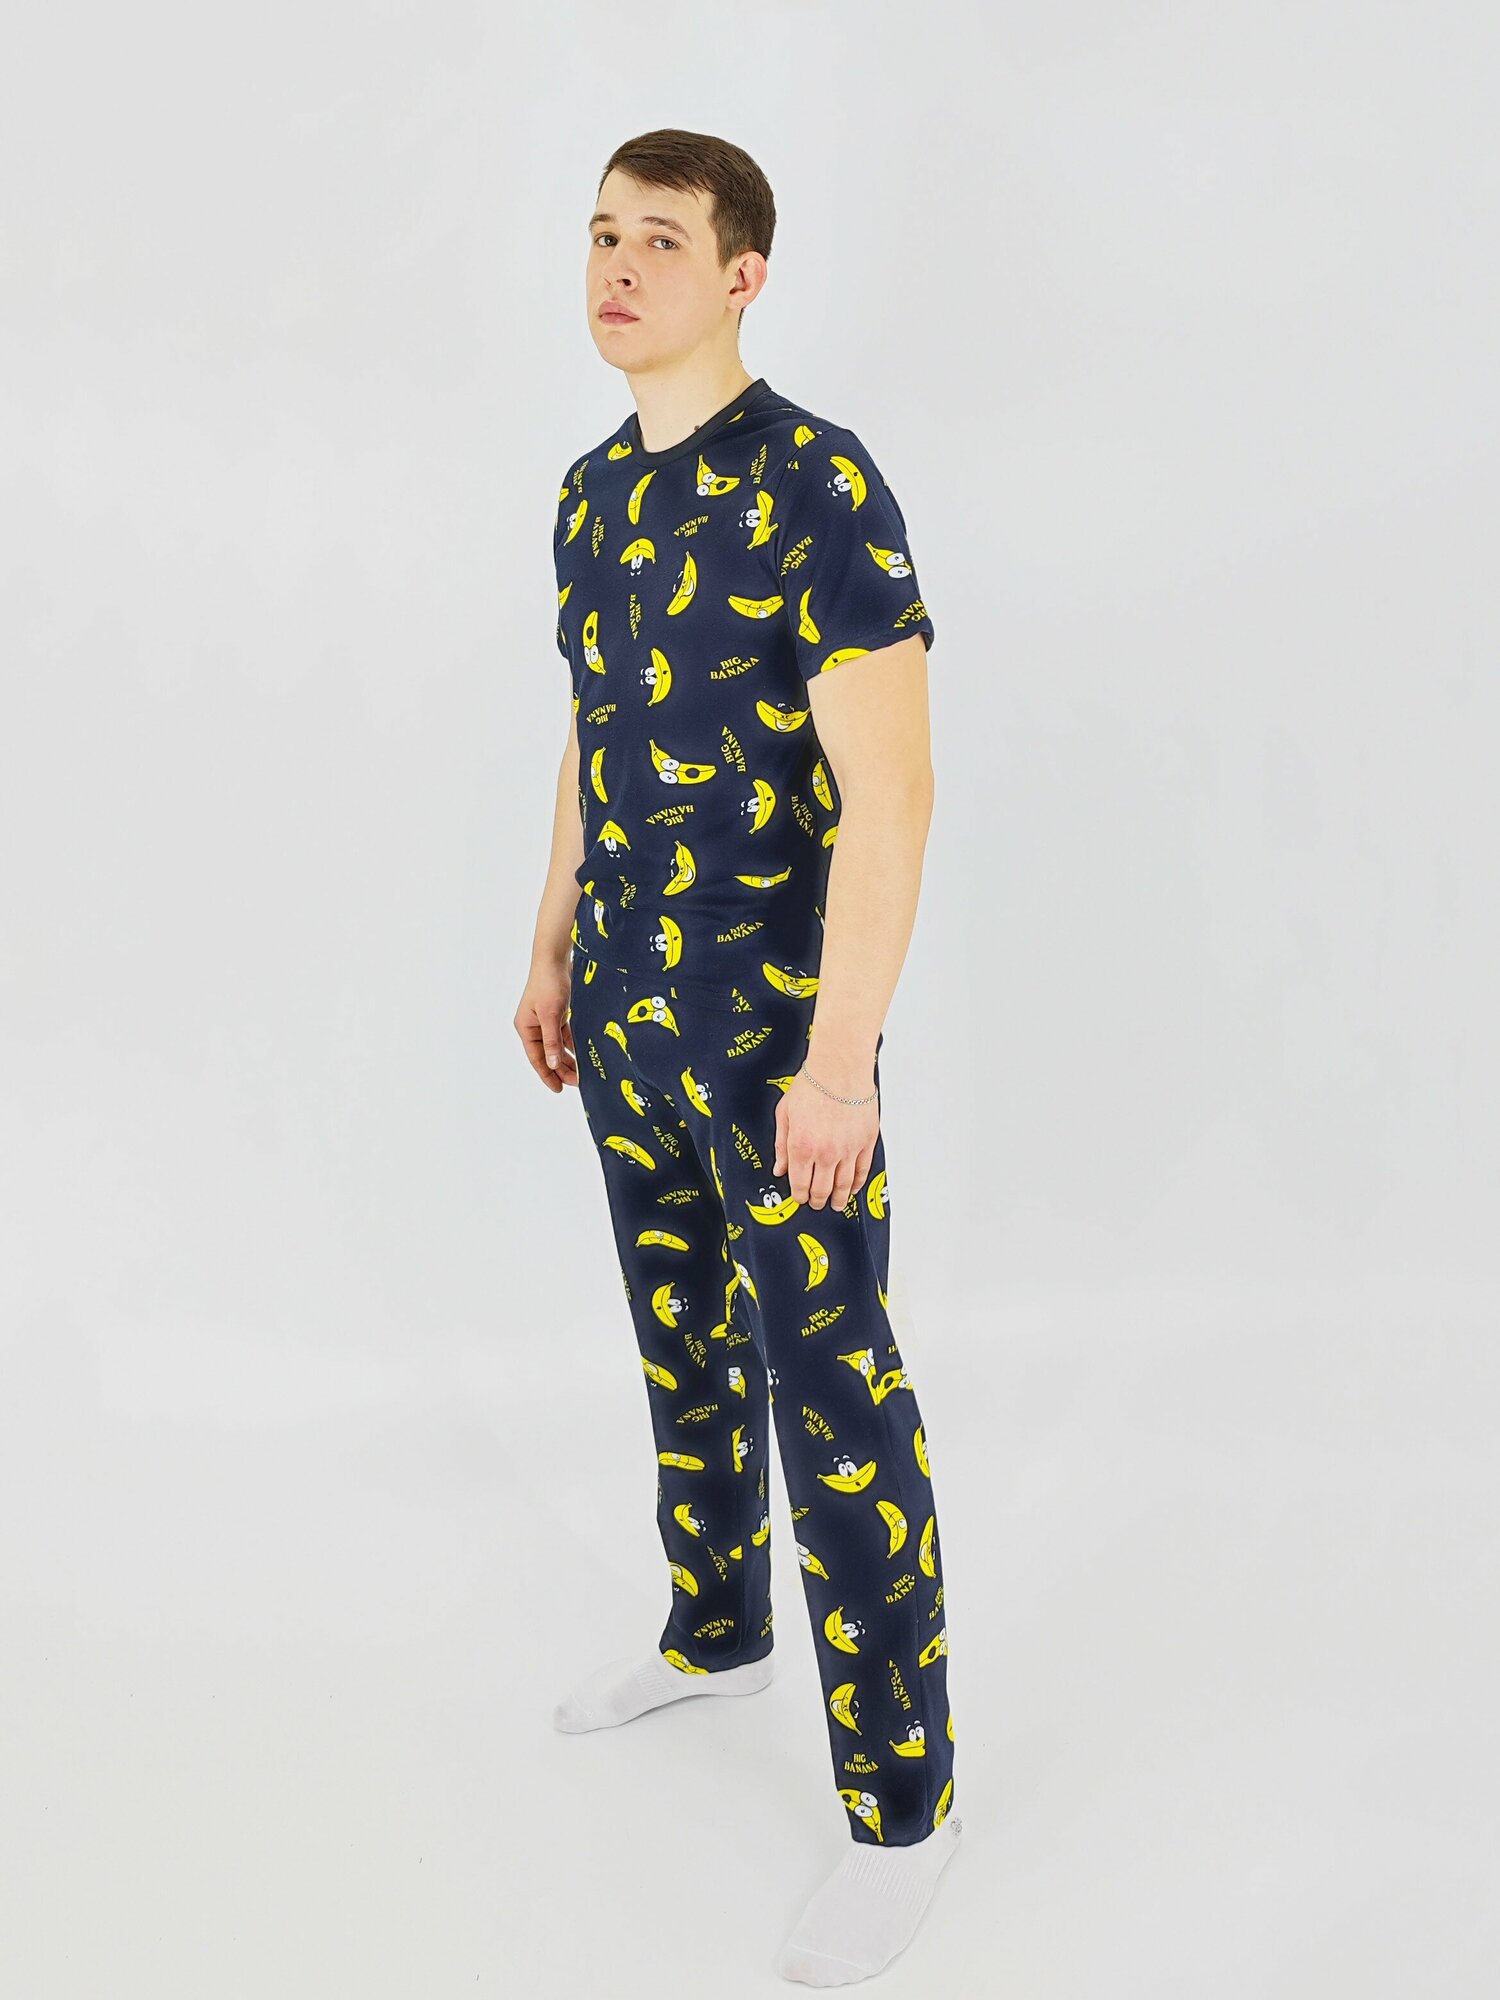 Мужская пижама, мужской пижамный комплект ARISTARHOV, Футболка + Брюки, Бананчик, синий желтый, размер 52 - фотография № 5